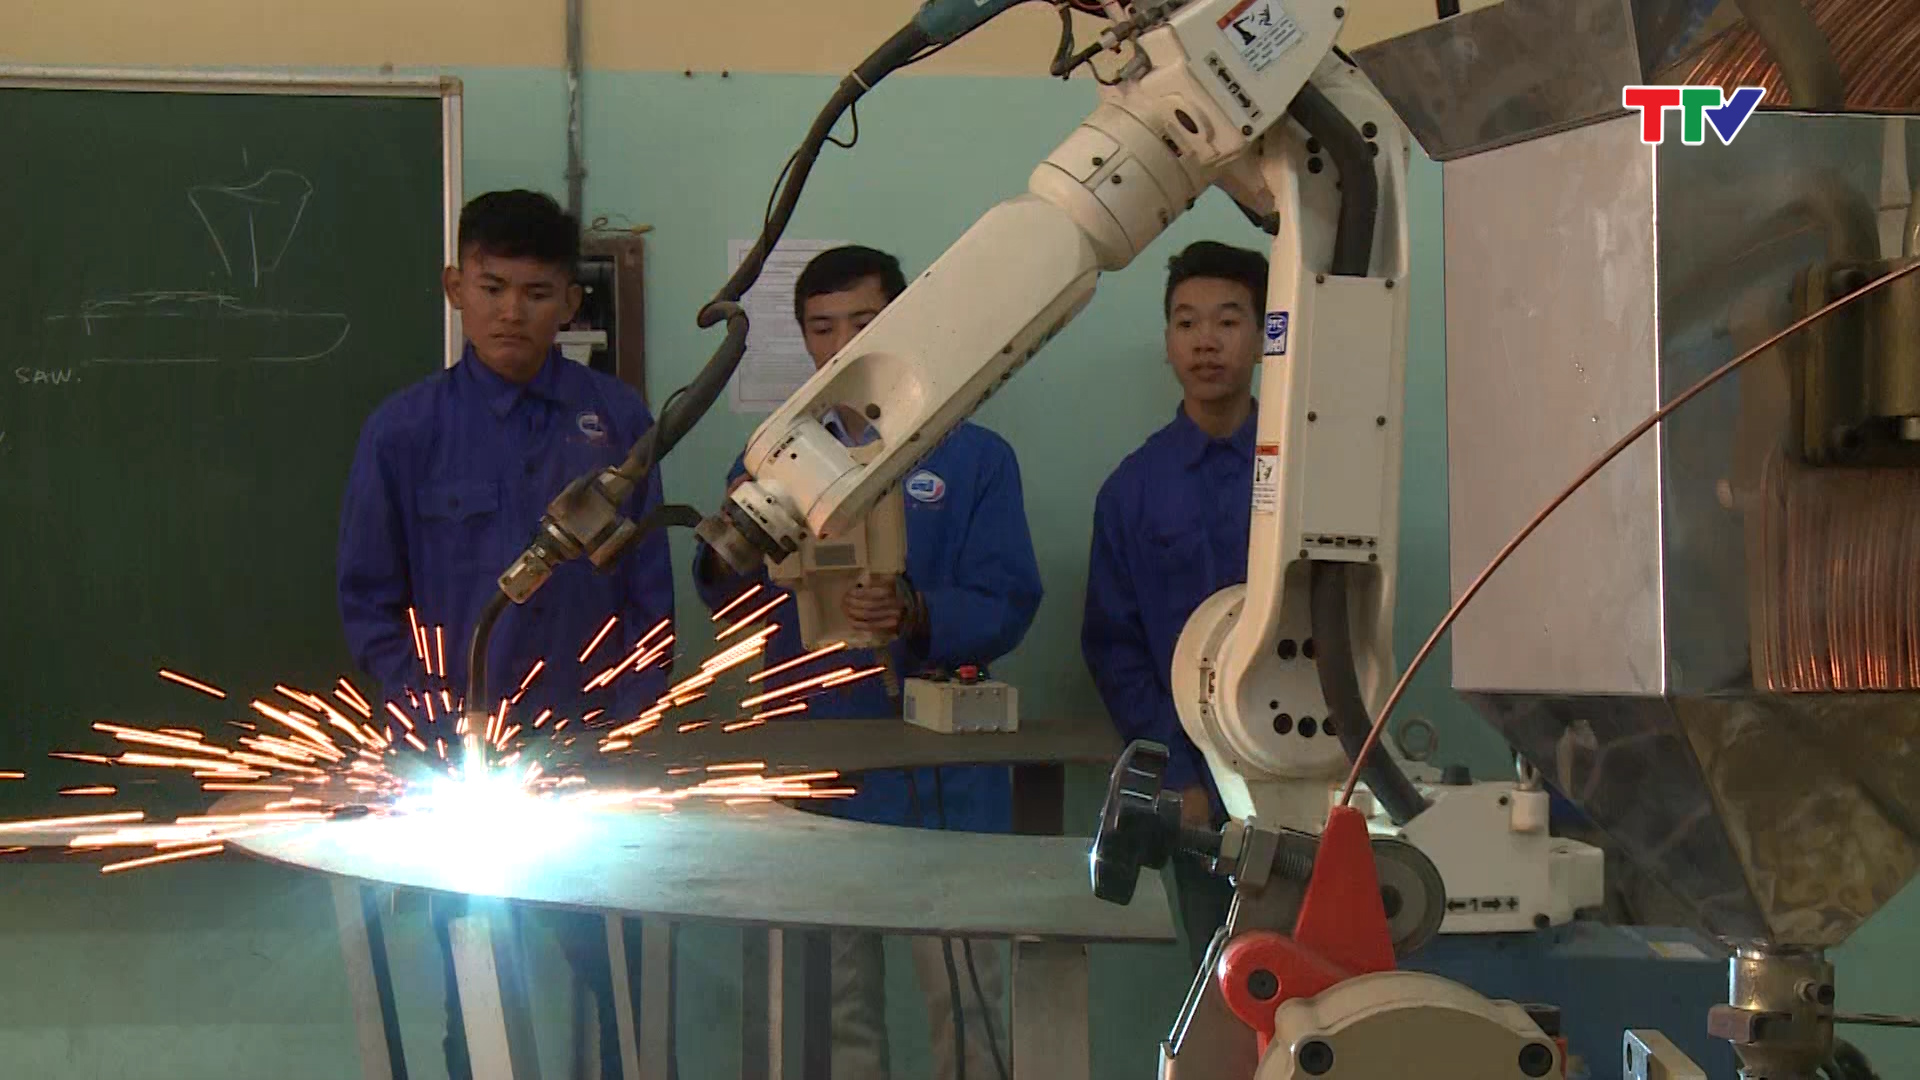 Trường Cao đẳng nghề công nghiệp Thanh Hóa bỏ ra nhiều tỷ đồng để mua sắm, đầu tư  các máy móc thiết bị hiện đại, phục vụ cho công tác dạy nghề,